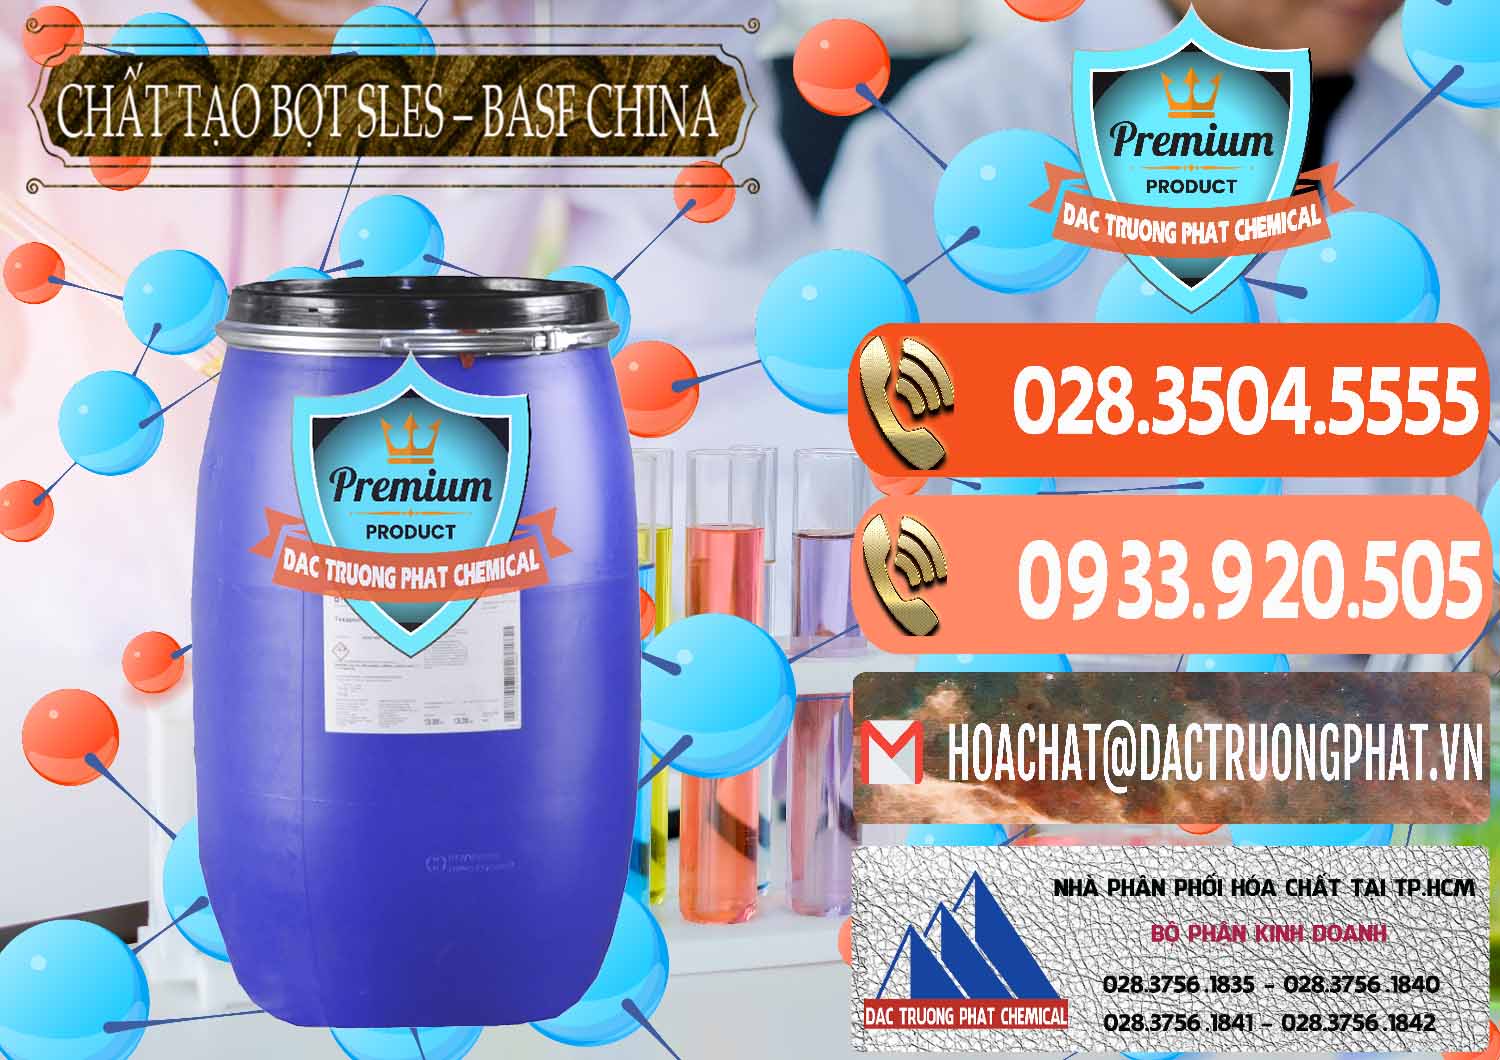 Nơi chuyên phân phối & bán Chất Tạo Bọt Sles - Sodium Lauryl Ether Sulphate BASF Trung Quốc China - 0332 - Đơn vị chuyên bán và cung cấp hóa chất tại TP.HCM - hoachatmientay.com